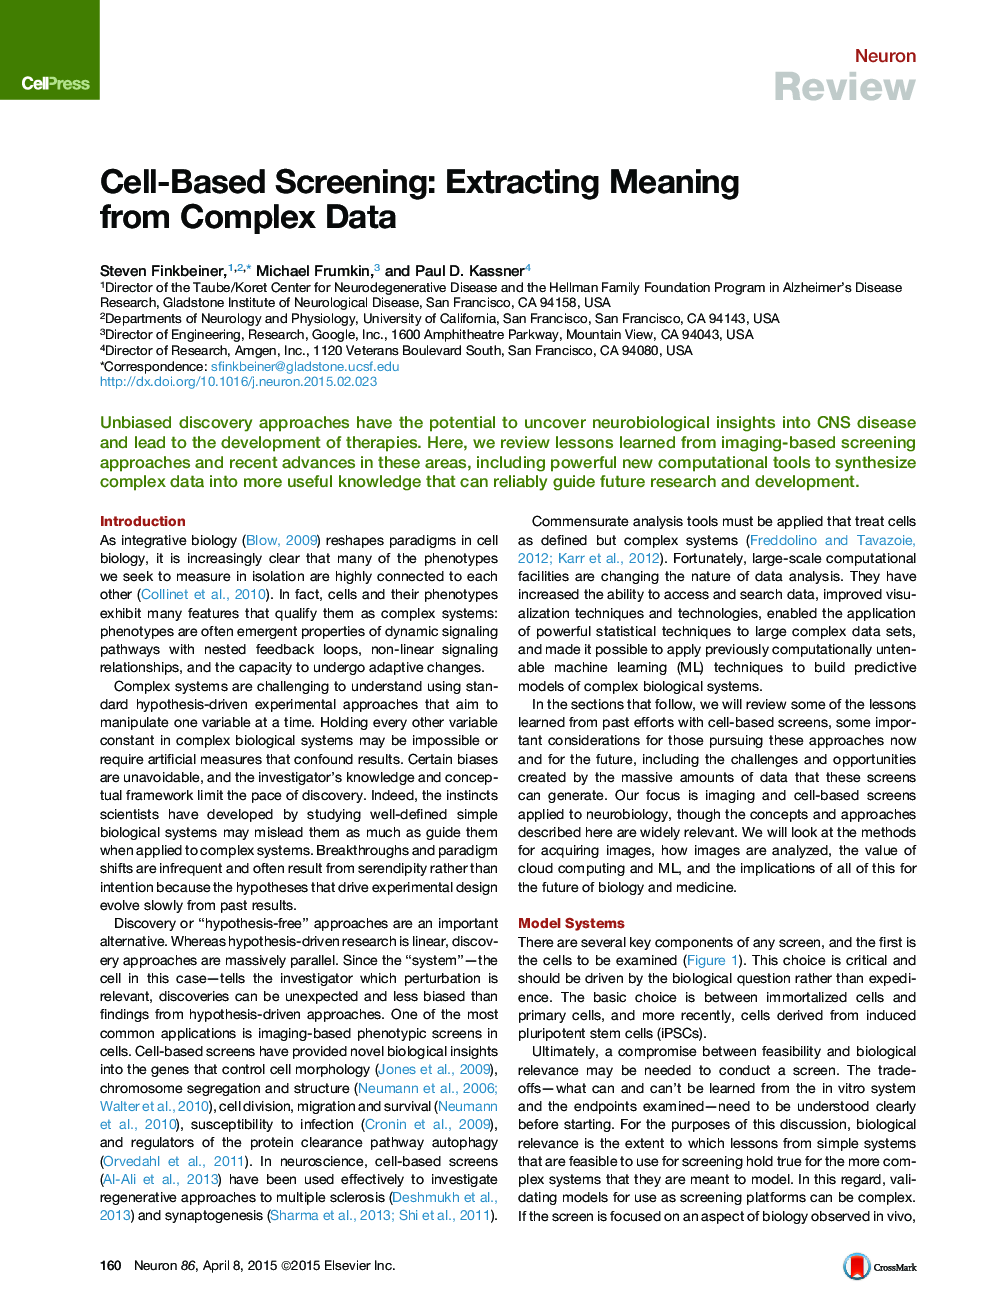 غربالگری مبتنی بر سلول: استخراج معنی از داده های پیچیده 